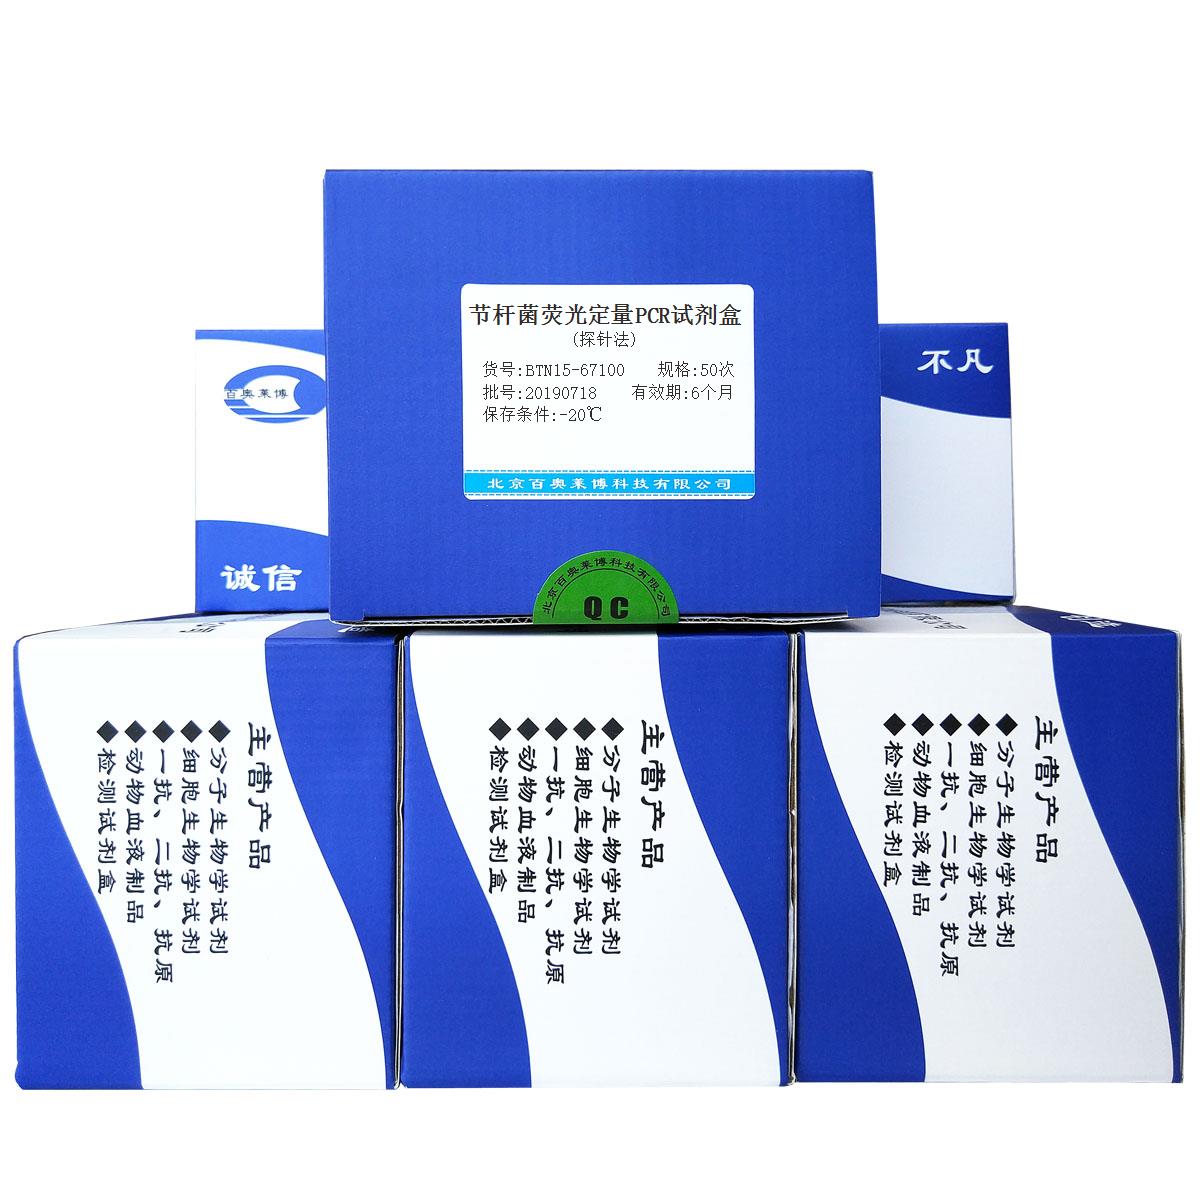 节杆菌荧光定量PCR试剂盒(探针法)现货供应